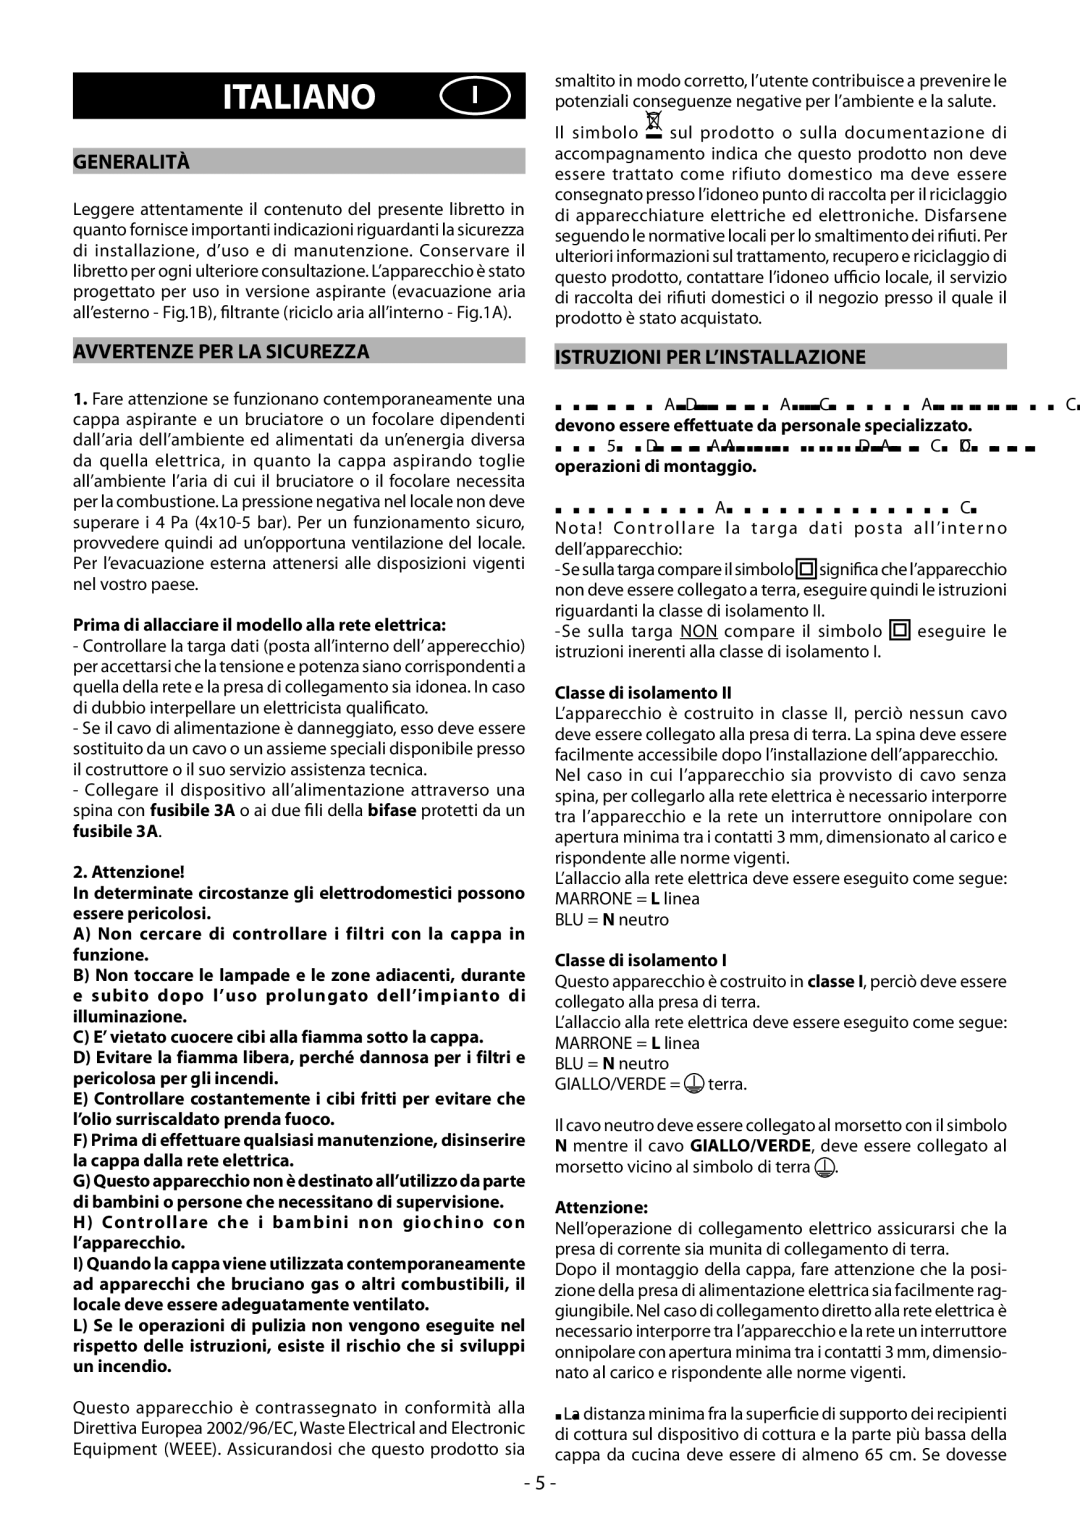 Beko HBG70X manual Italiano, Generalità, Avvertenze PER LA Sicurezza, Istruzioni PER L’INSTALLAZIONE 